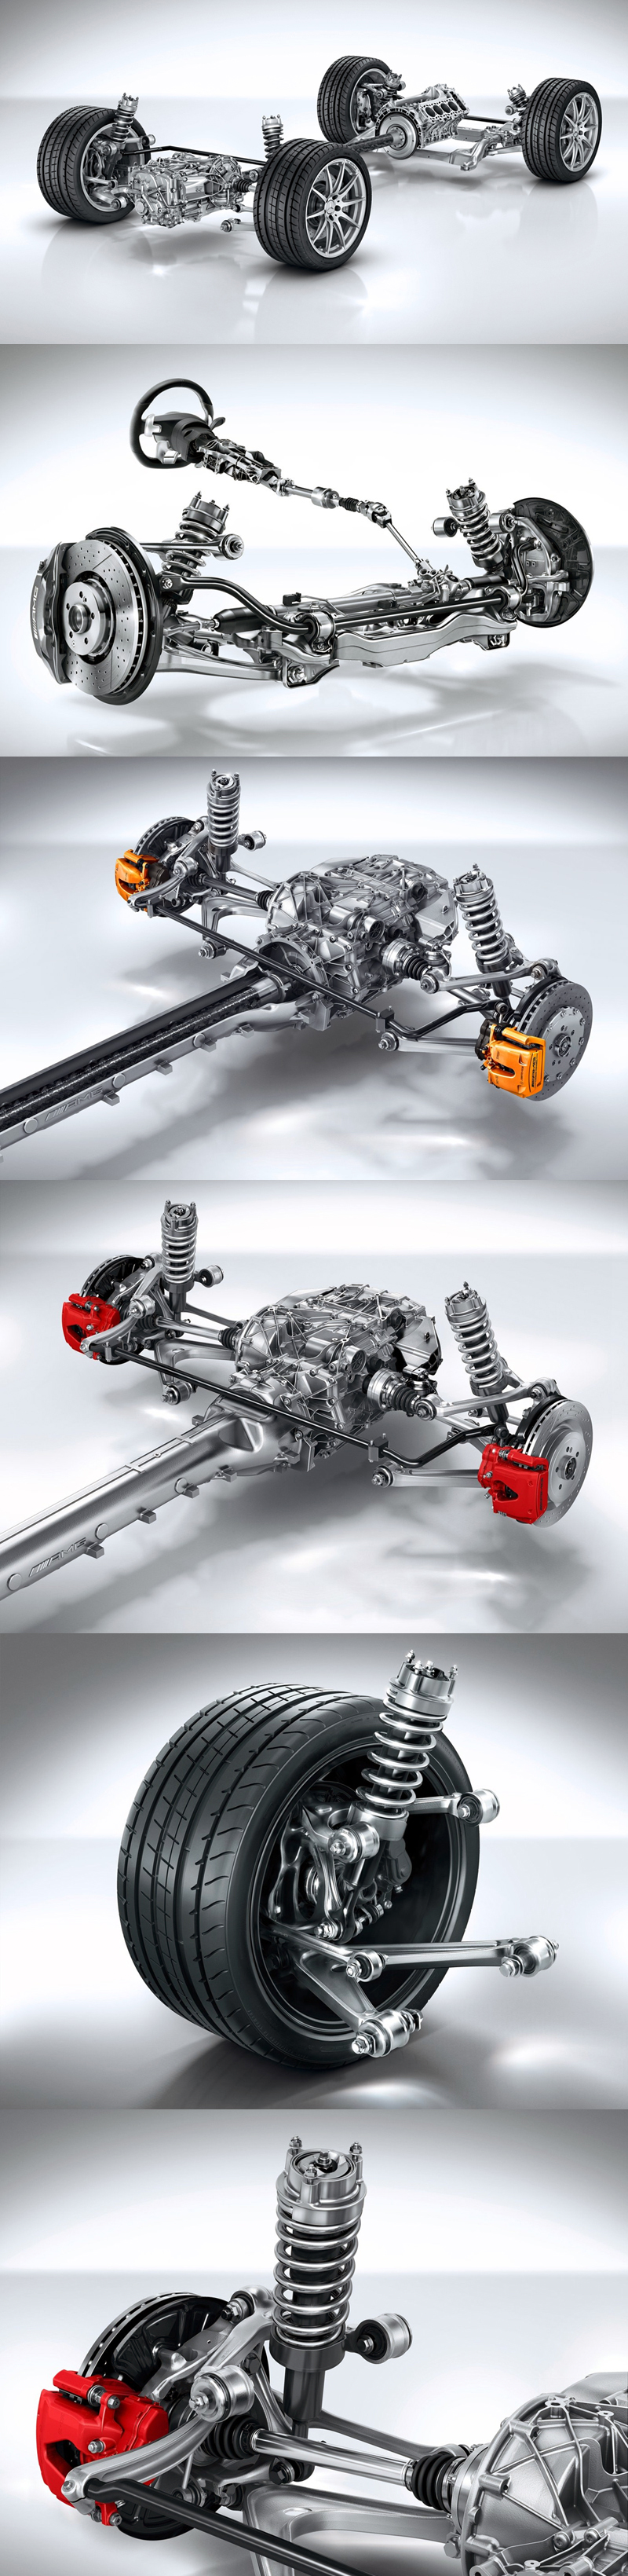 2015_08_Mercedes_Benz_AMG_GT_S_Engine_06_Suspension